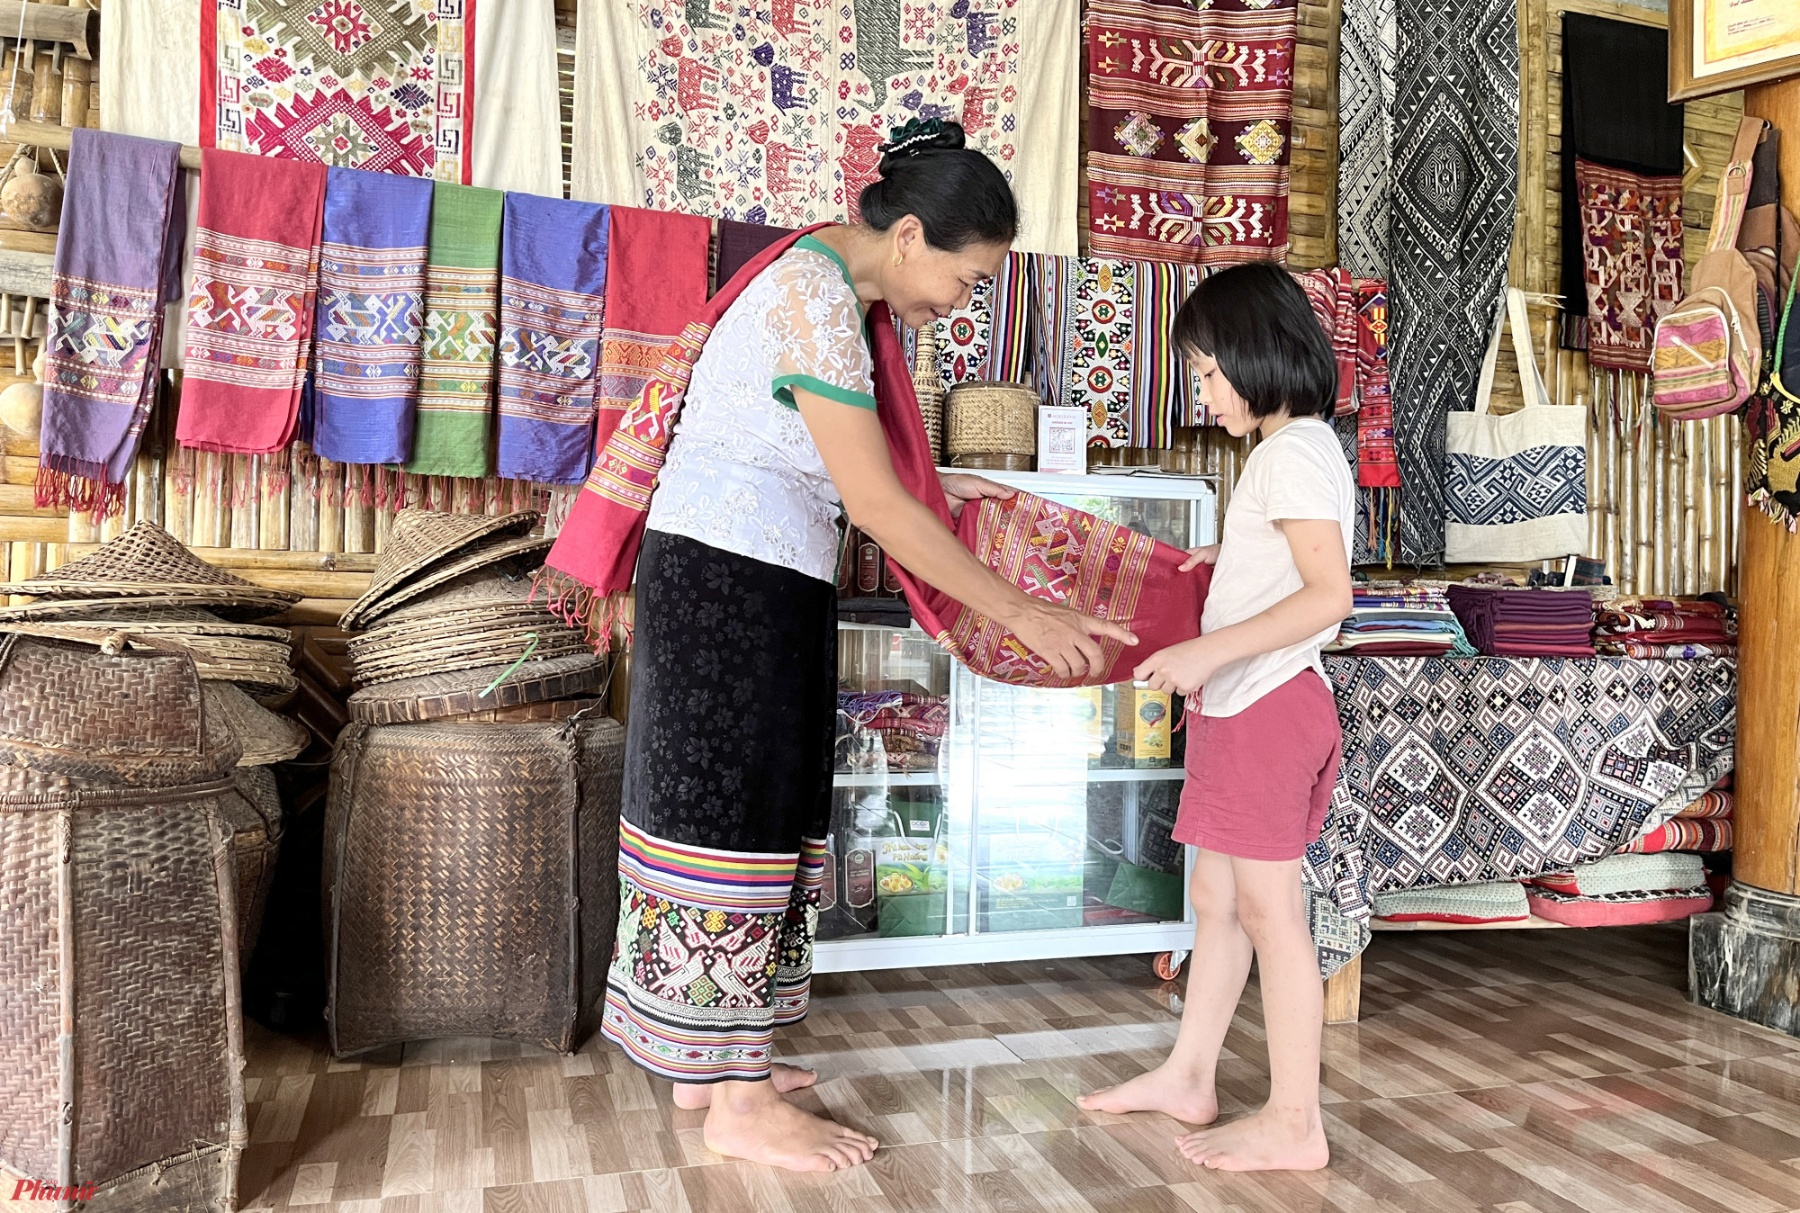 Cách Mường Đán chừng 70km, bản Hoa Tiến (xã Châu Tiến, huyện Quỳ Châu, tỉnh Nghệ An) cũng đang được nhiều người tìm đến trải nghiệm các phong tục, tập quán của người Thái cổ. Hoa Tiến có gần 500 hộ dân đều là người Thái, sinh sống trong những căn nhà sàn truyền thống bằng gỗ.